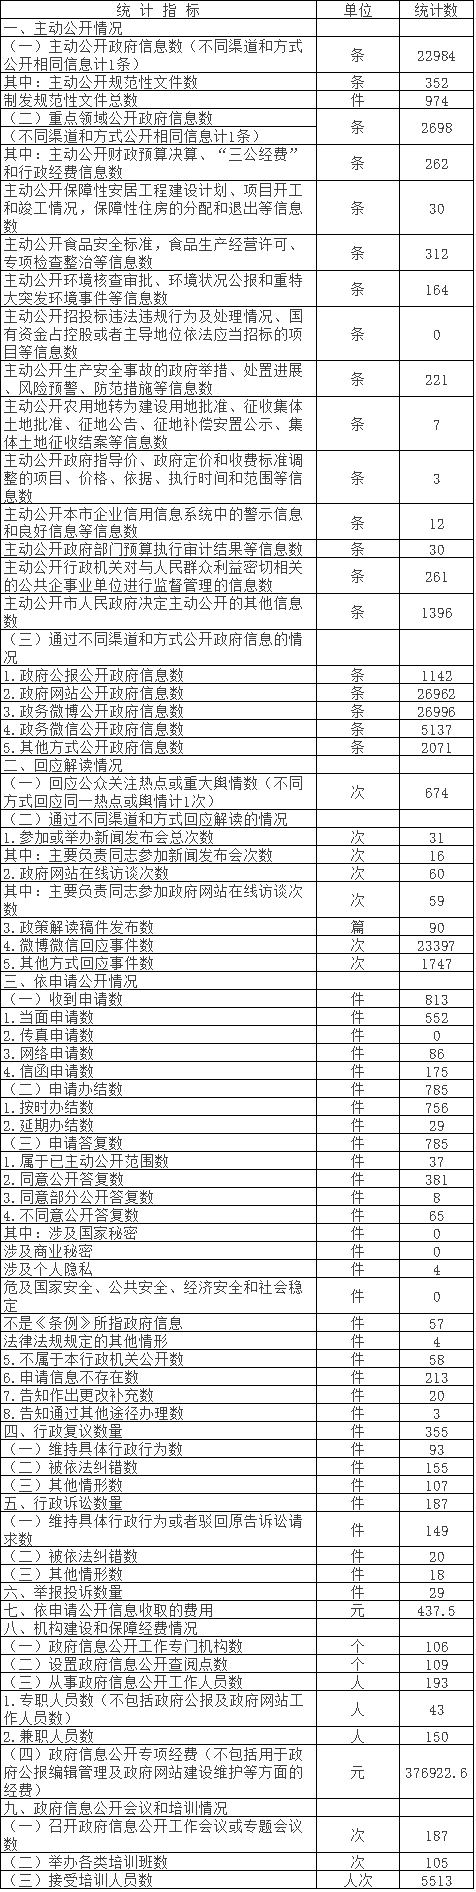 北京市朝阳区人民政府信息公开情况统计表(2016年度)